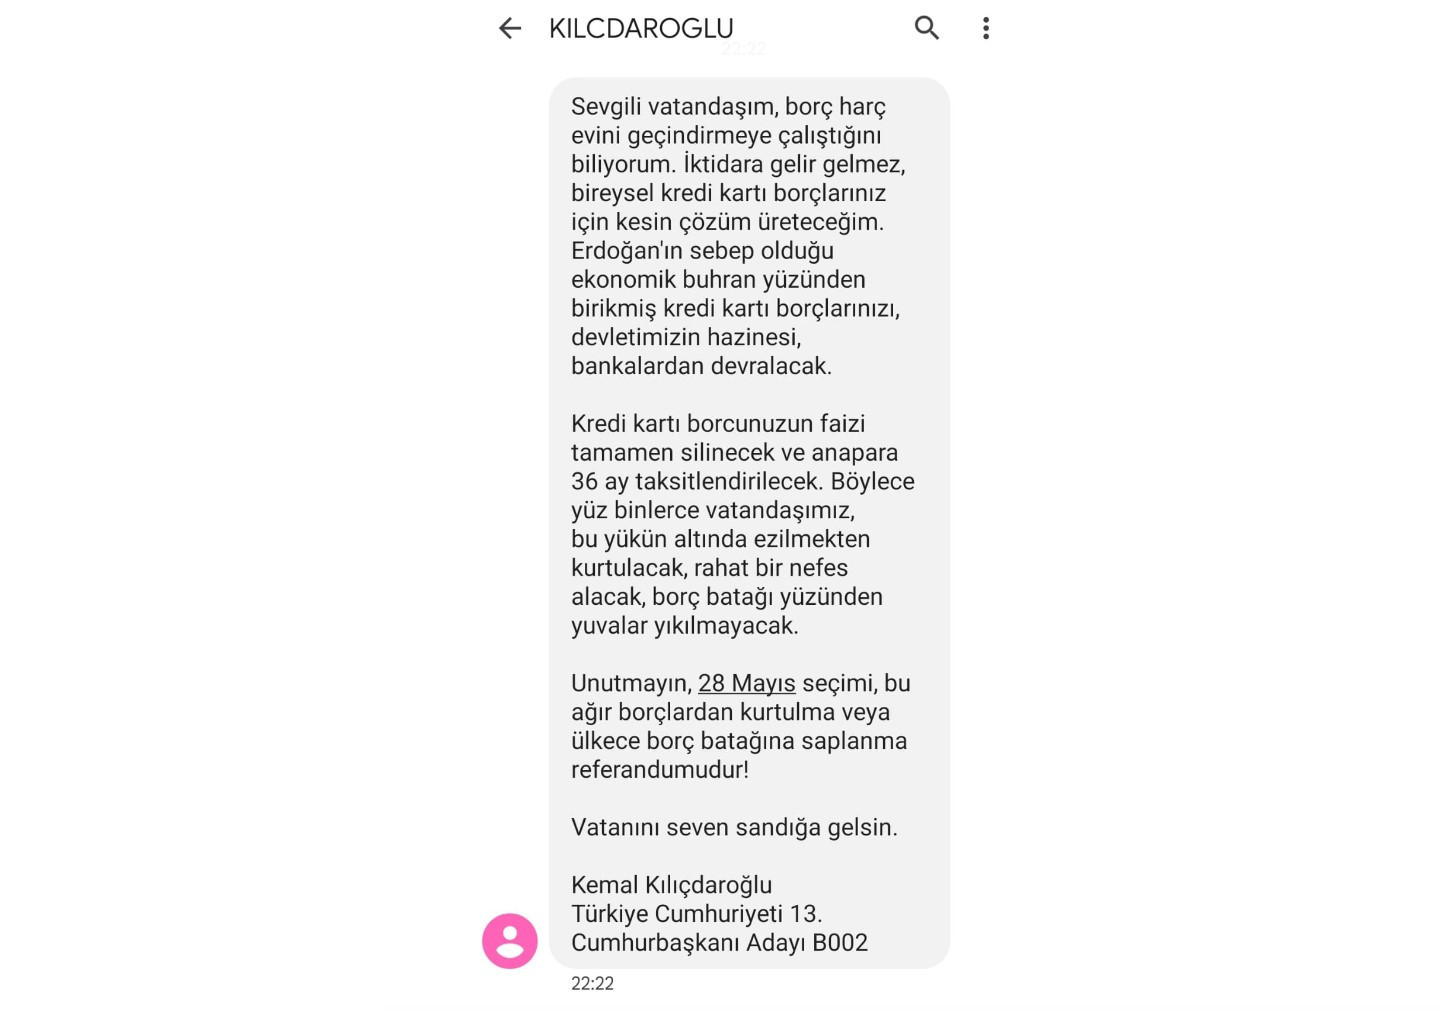 SDF_Kılıcdaroglu_sms